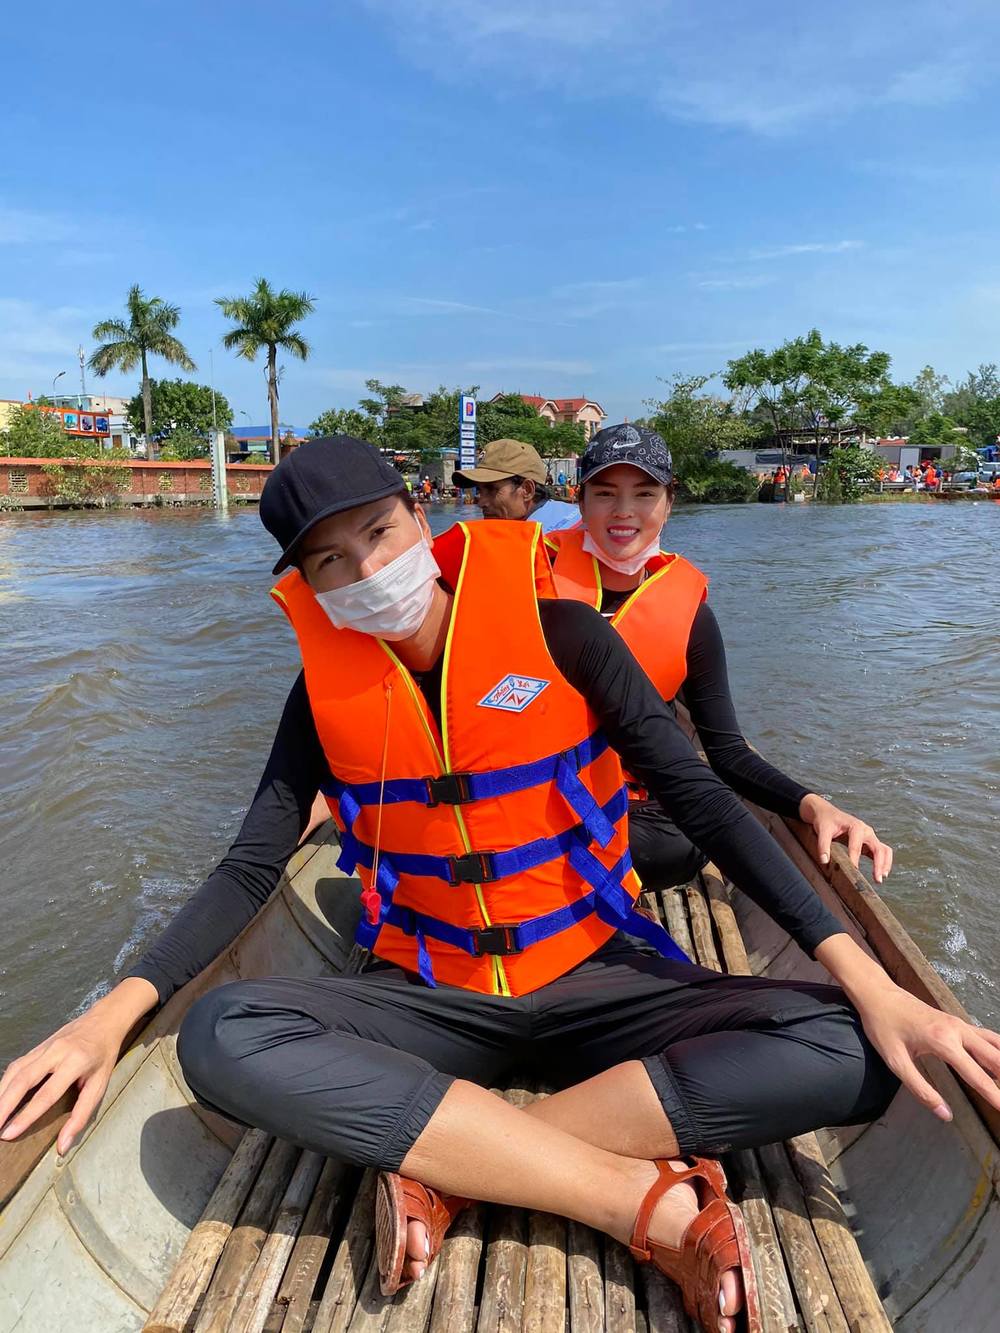  
Cả hai đi trên dòng nước lớn từ lúc mưa đến khi có ánh nắng vẫn nở nụ cười thân thiện. (Ảnh: FBNV) - Tin sao Viet - Tin tuc sao Viet - Scandal sao Viet - Tin tuc cua Sao - Tin cua Sao